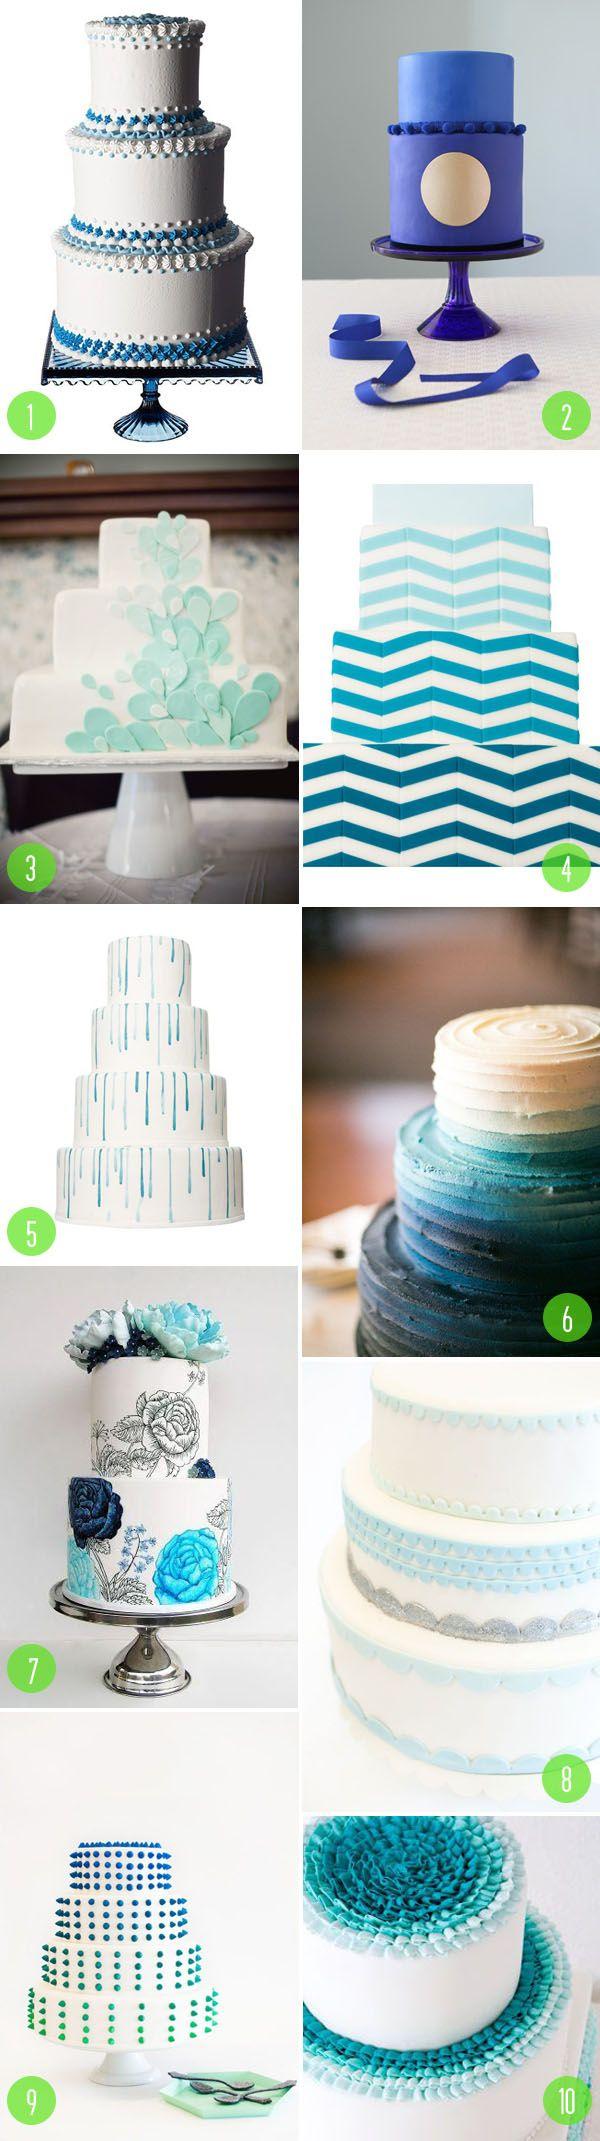 زفاف - أعلى 10: كعك الزفاف الأزرق